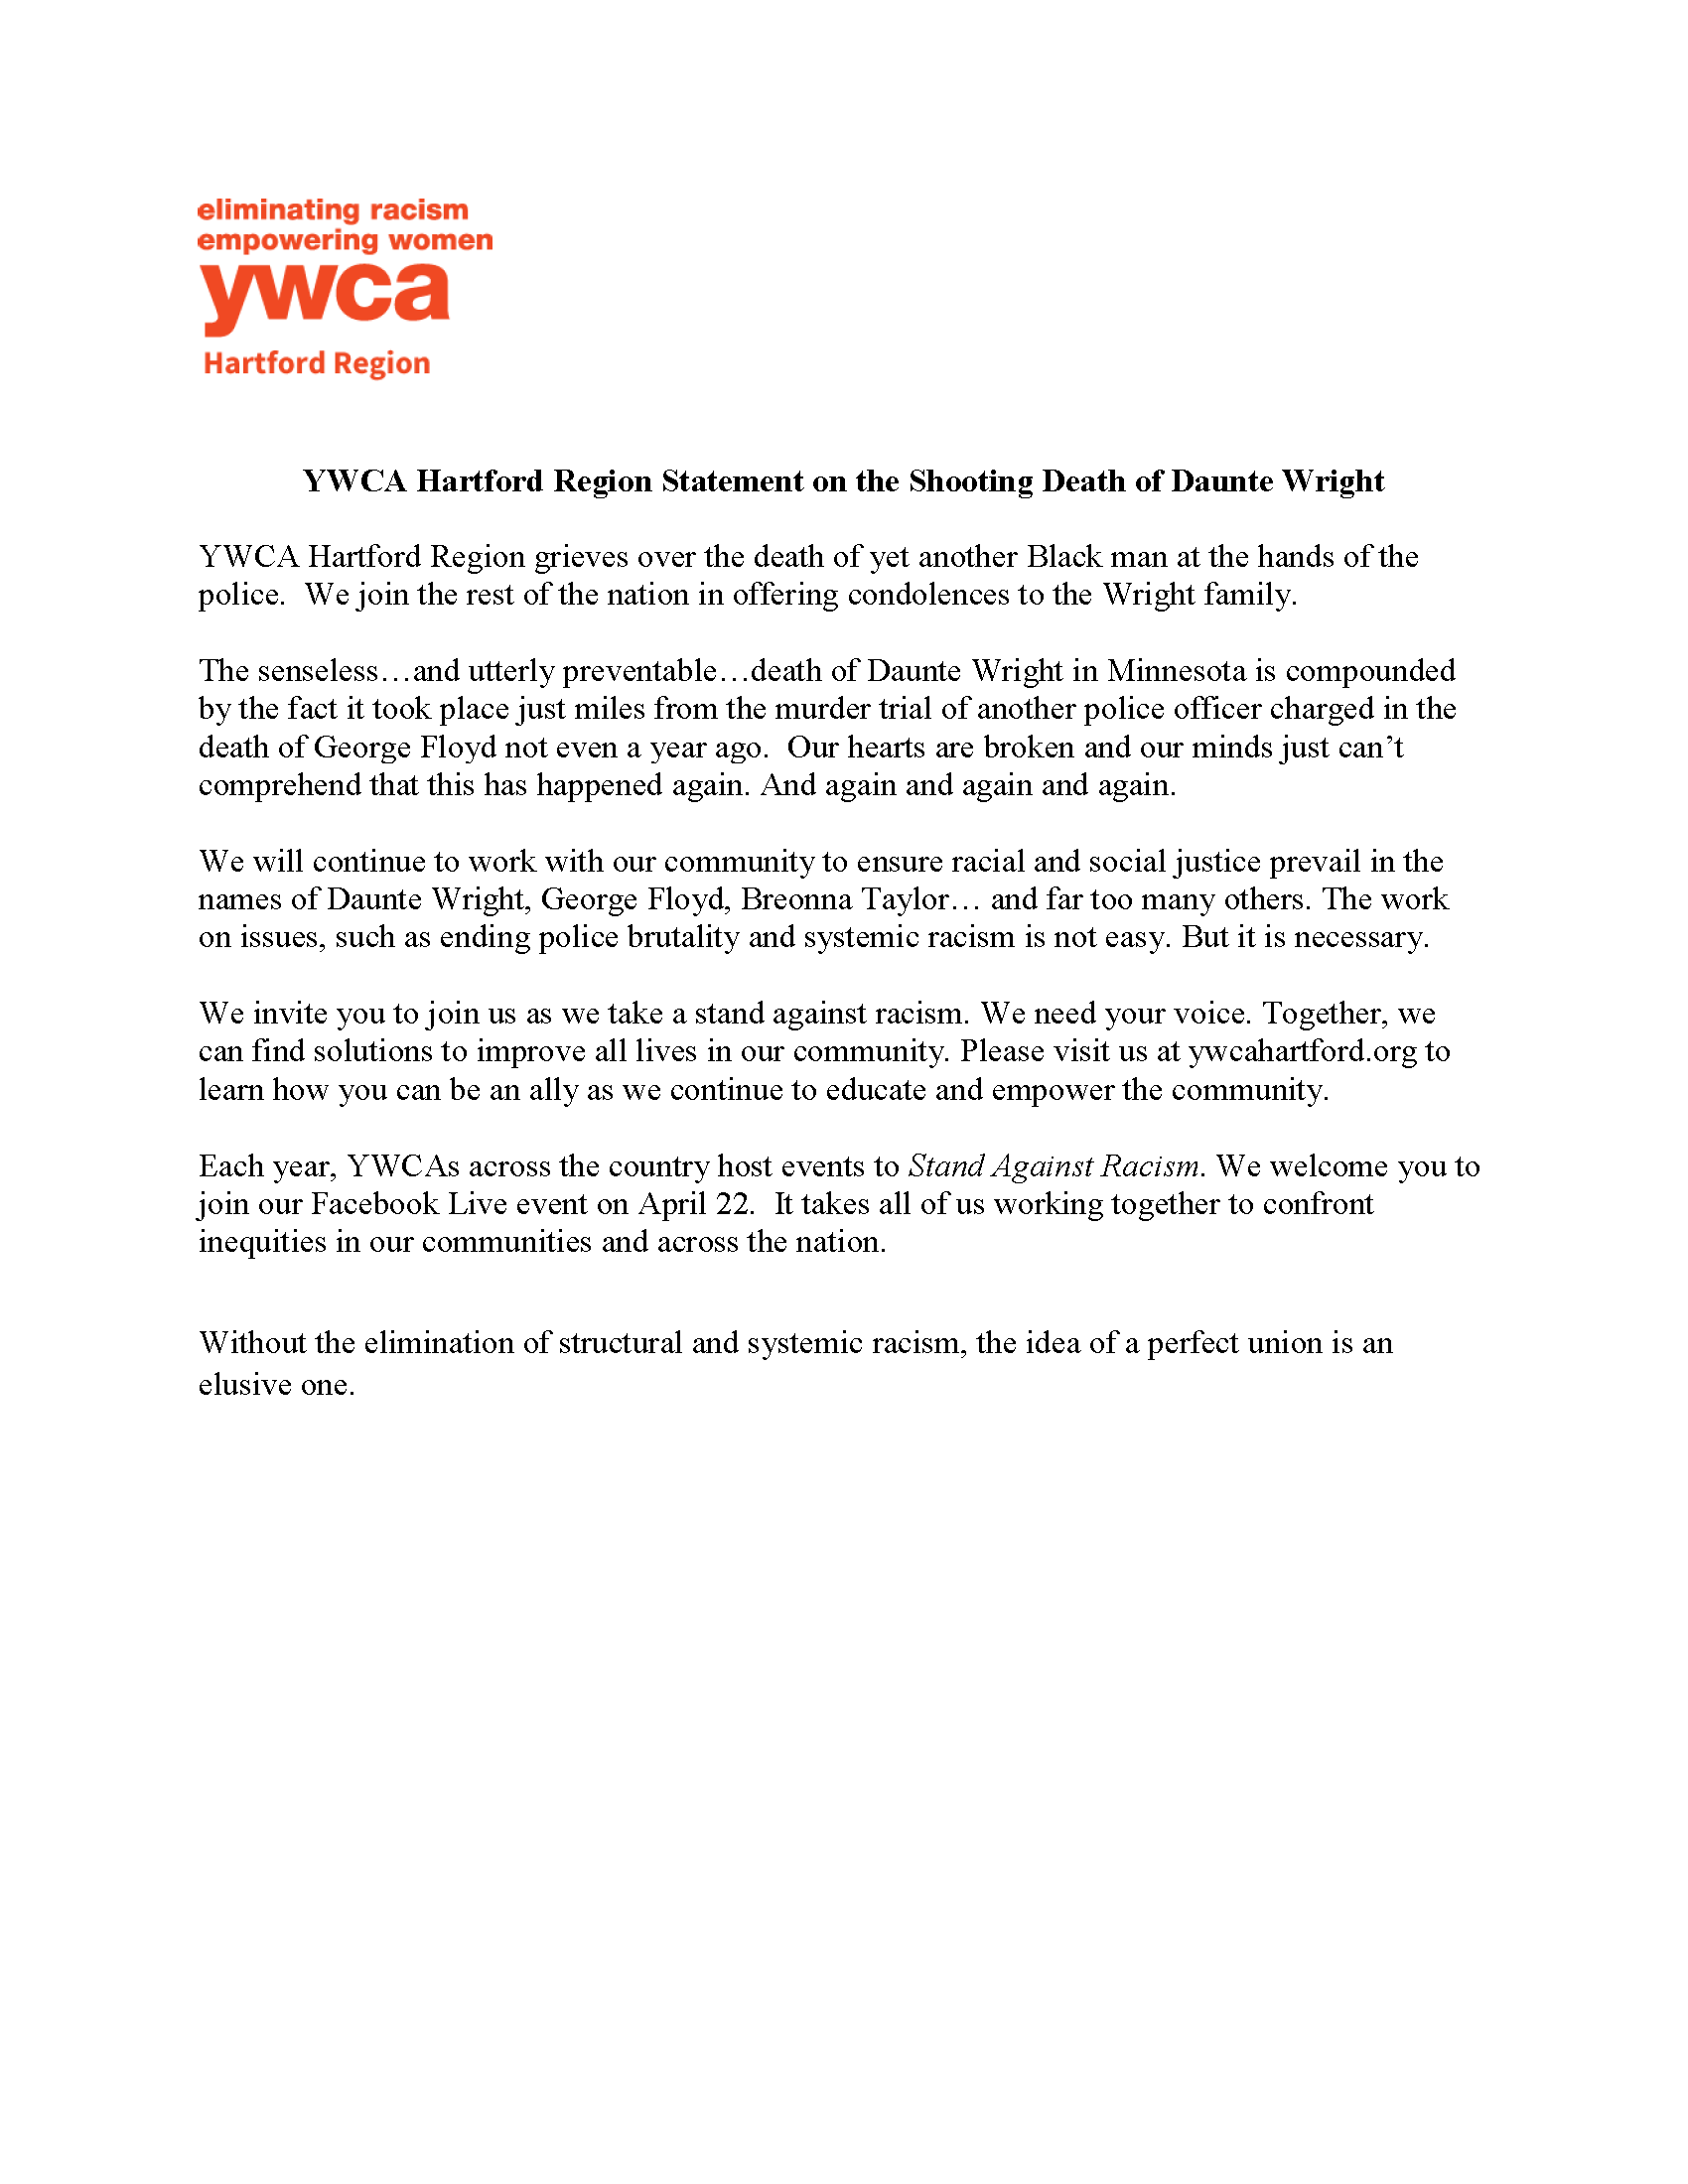 YWCA Hartford Region Statement - Daunte Wright